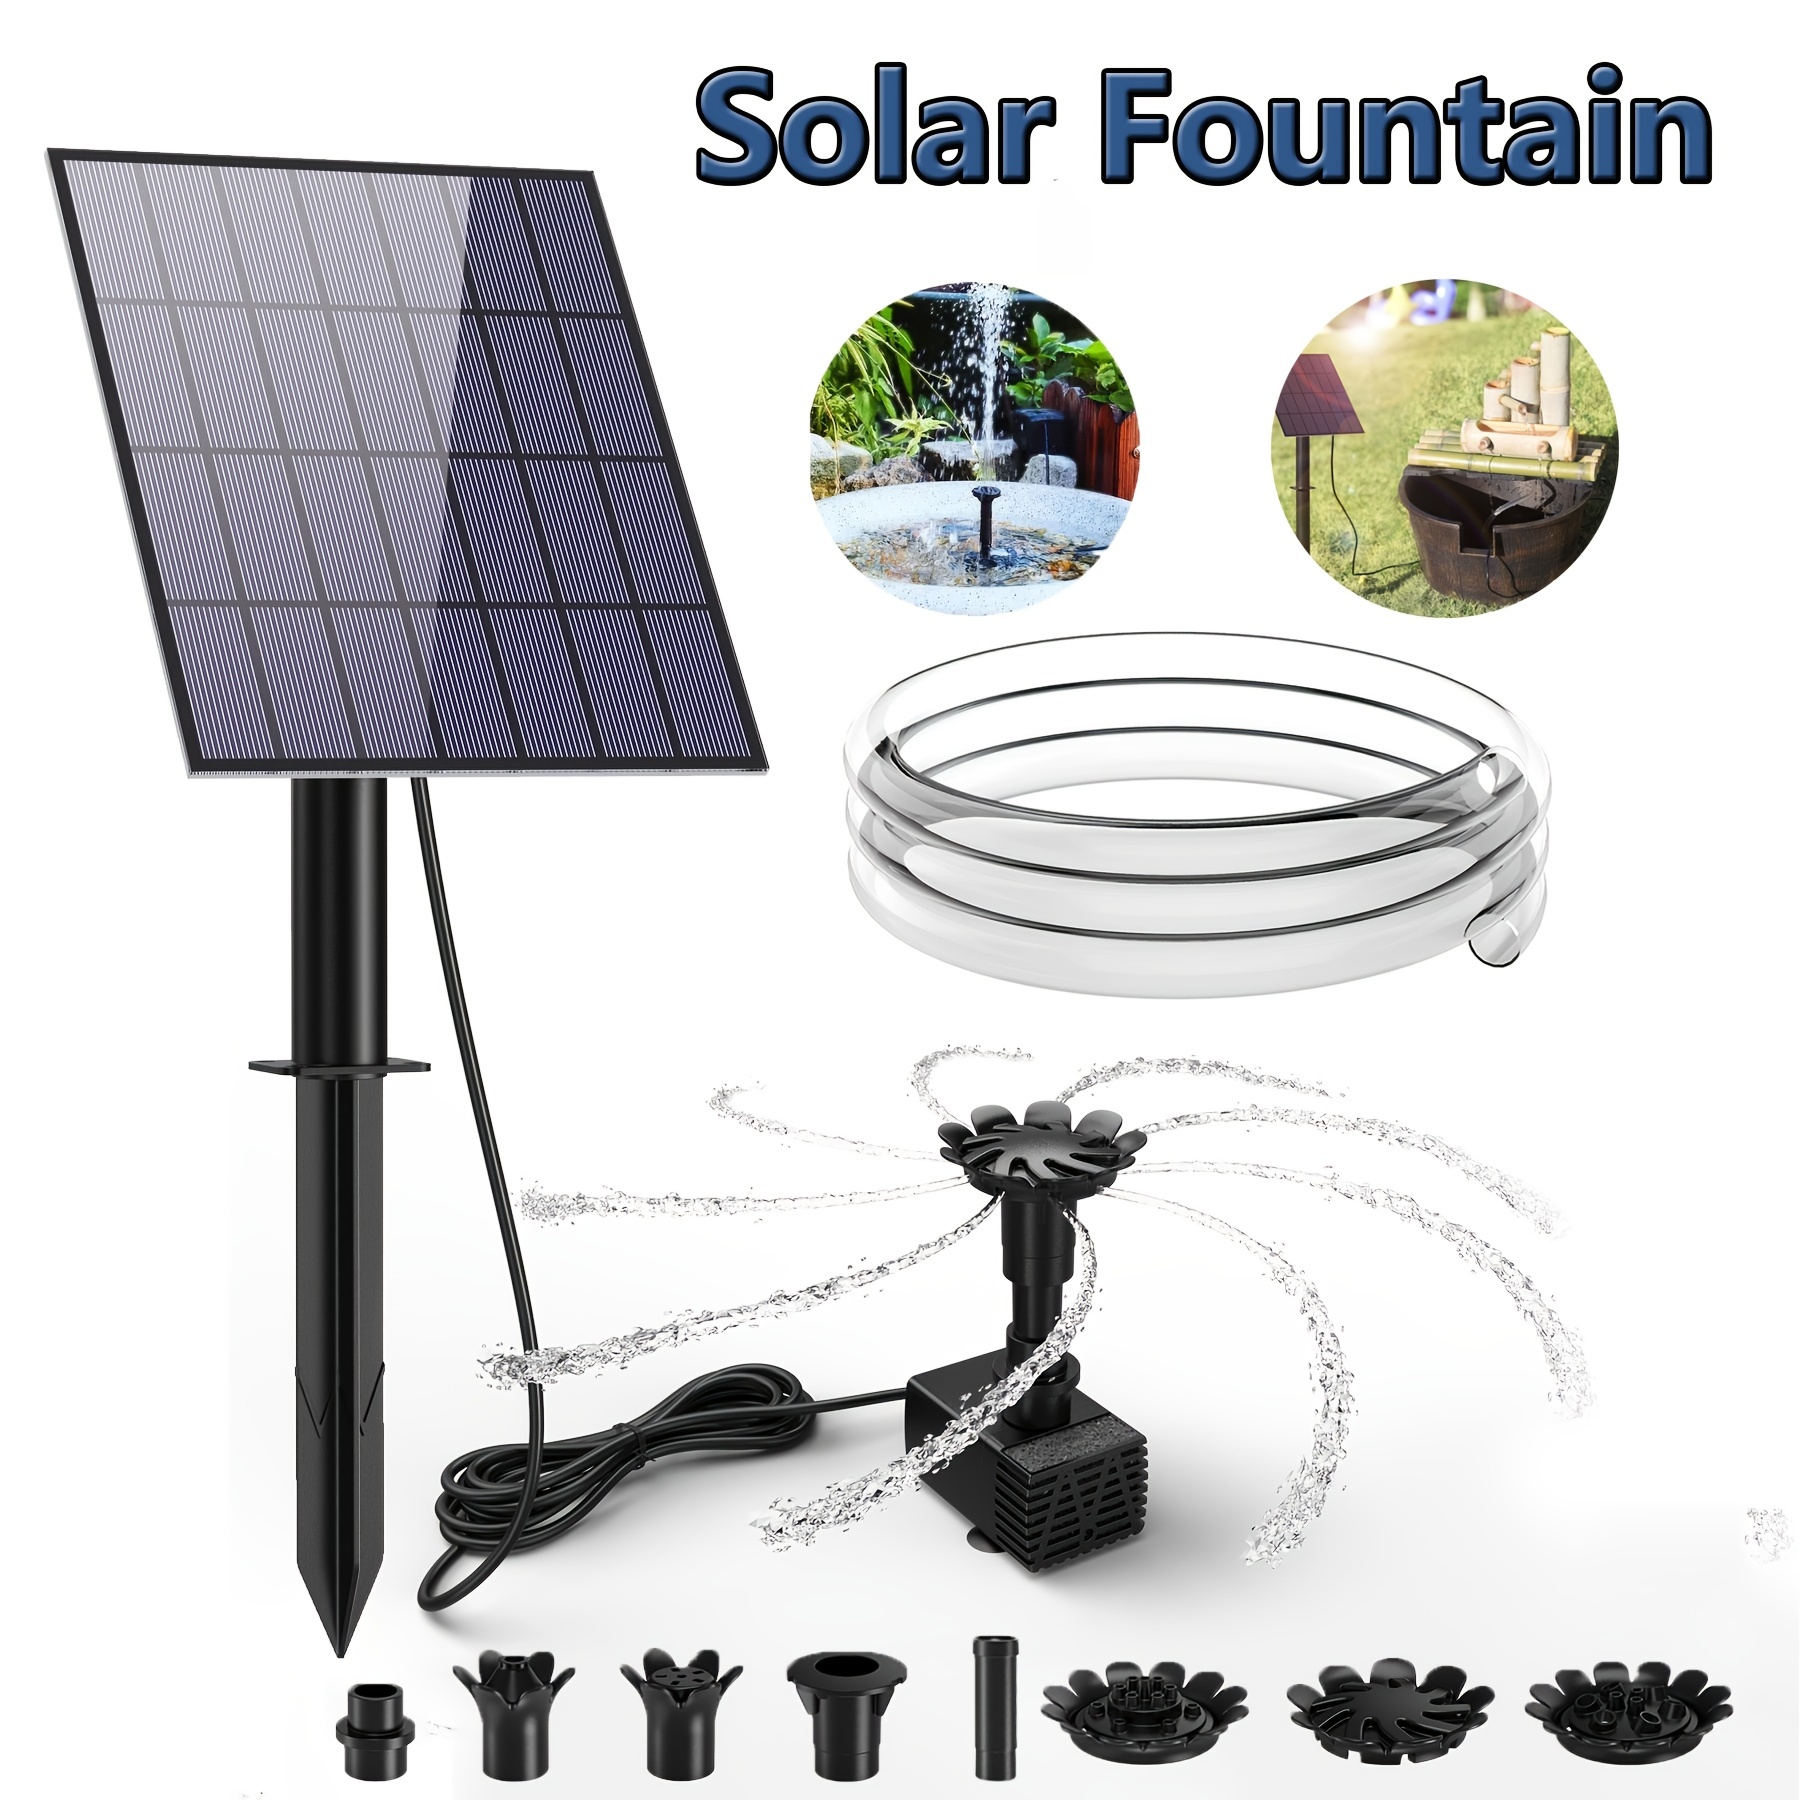 Solar Springbrunnenpumpe - Kostenloser Versand Für Neue Benutzer